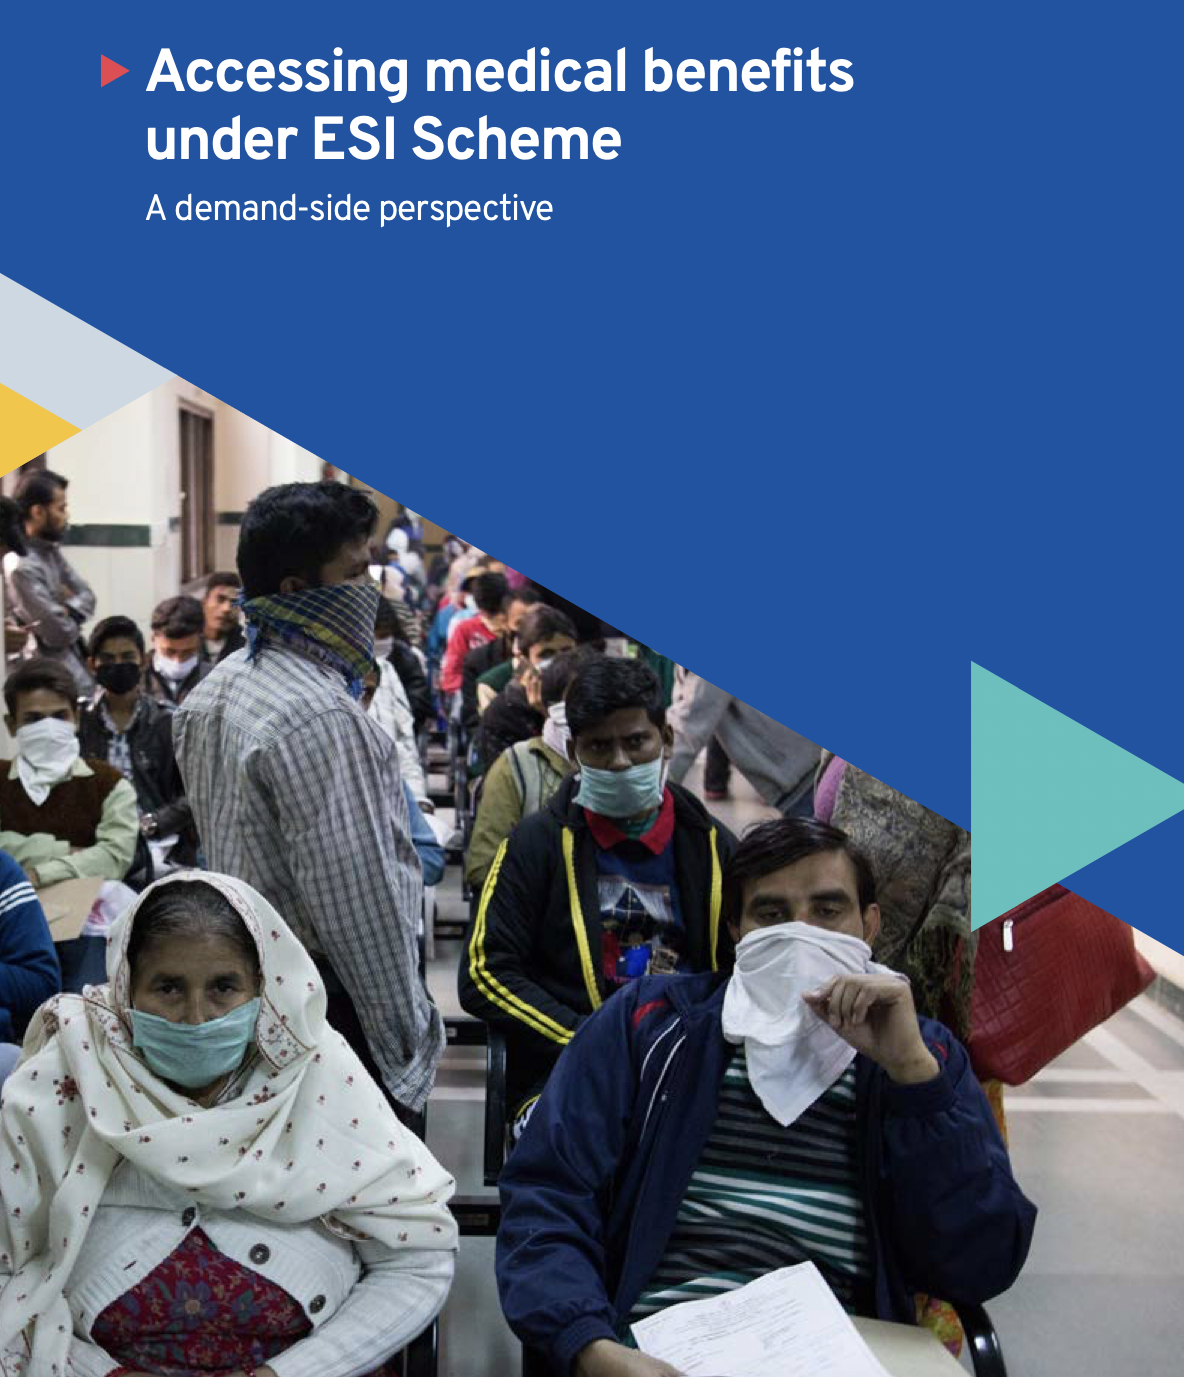 Presentación del informe y mesa redonda: Acceso a las prestaciones sanitarias del régimen ESI: Una perspectiva desde el punto de vista de la demanda